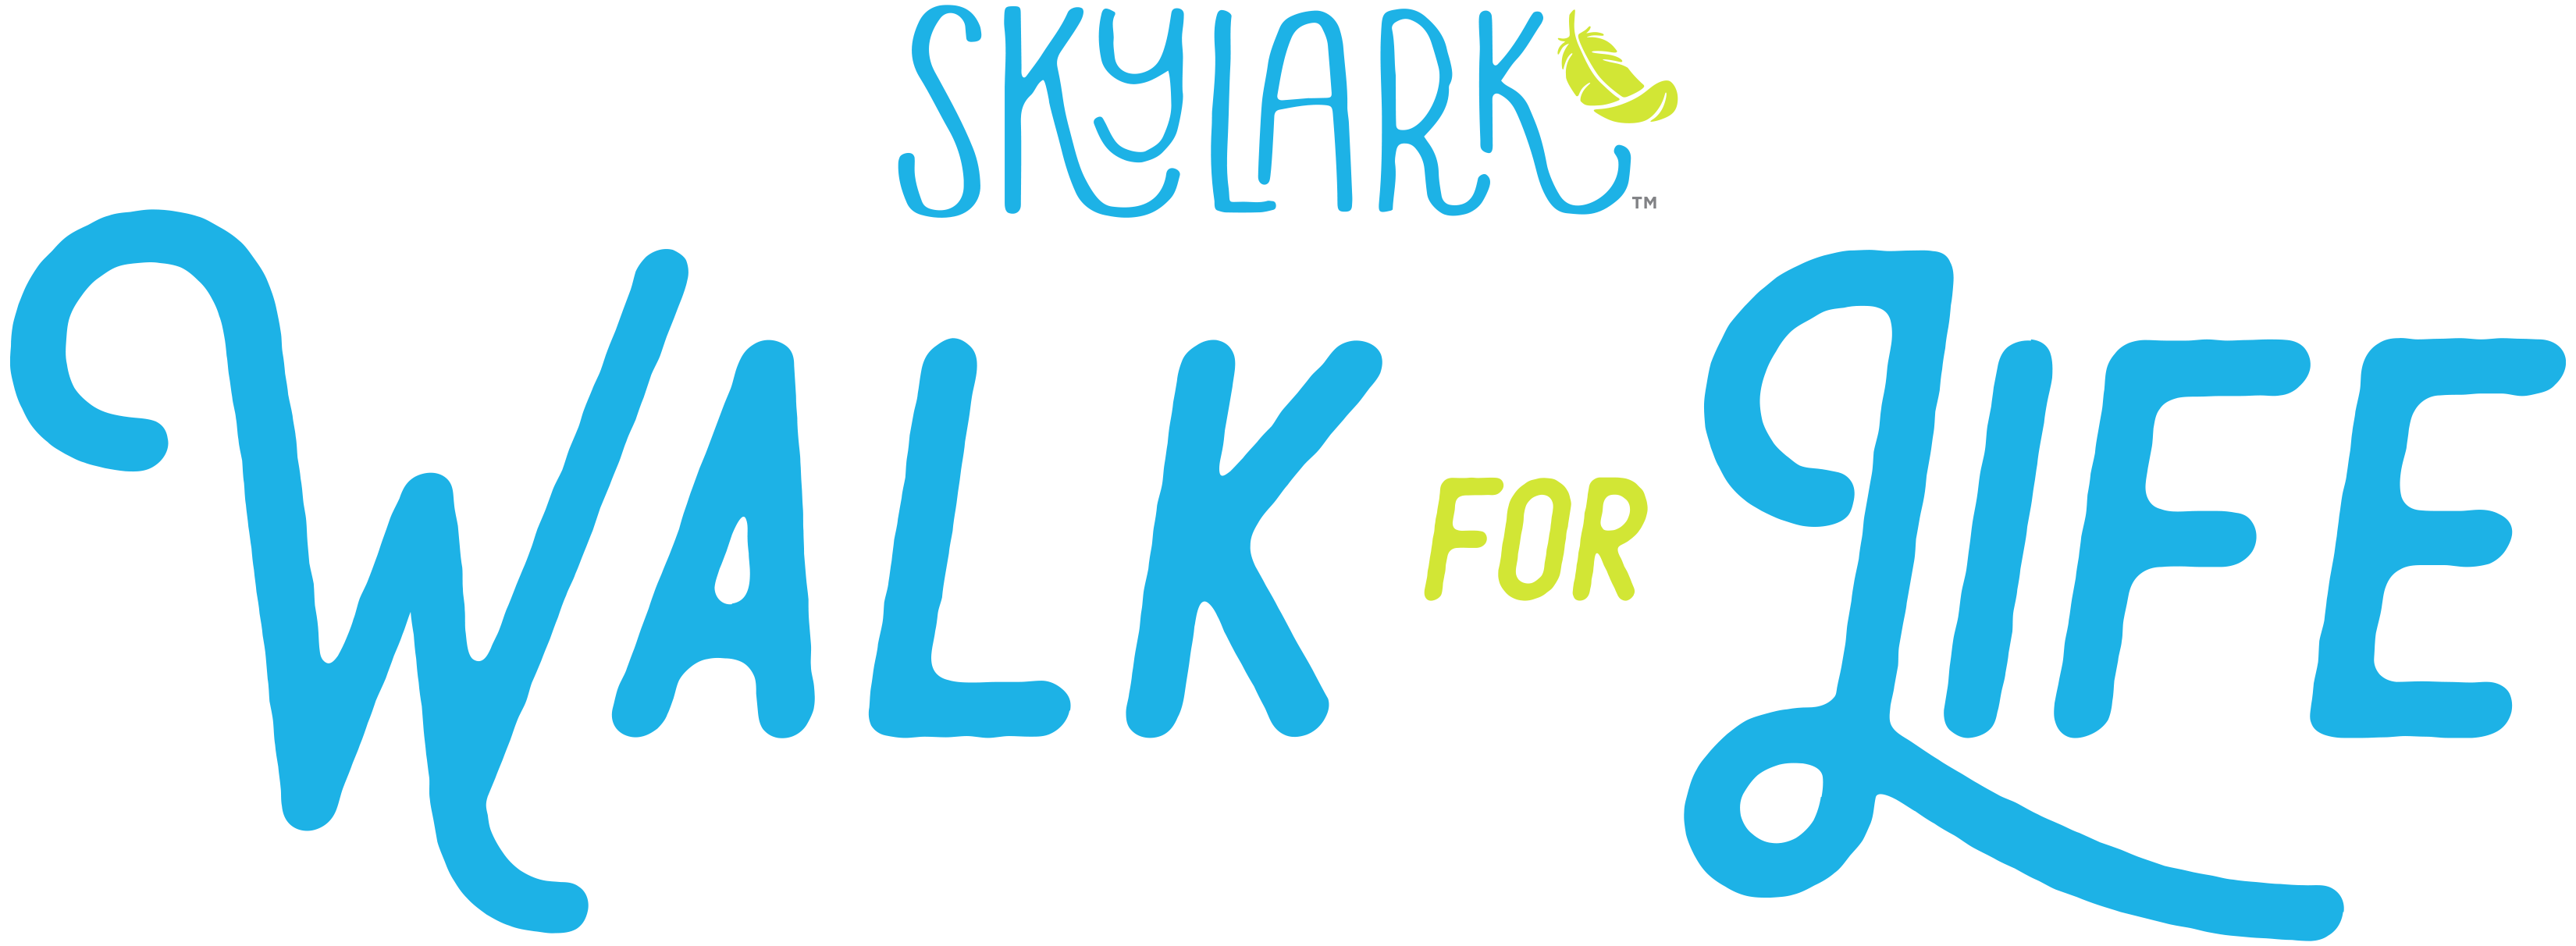 Skylark's Walk for Life